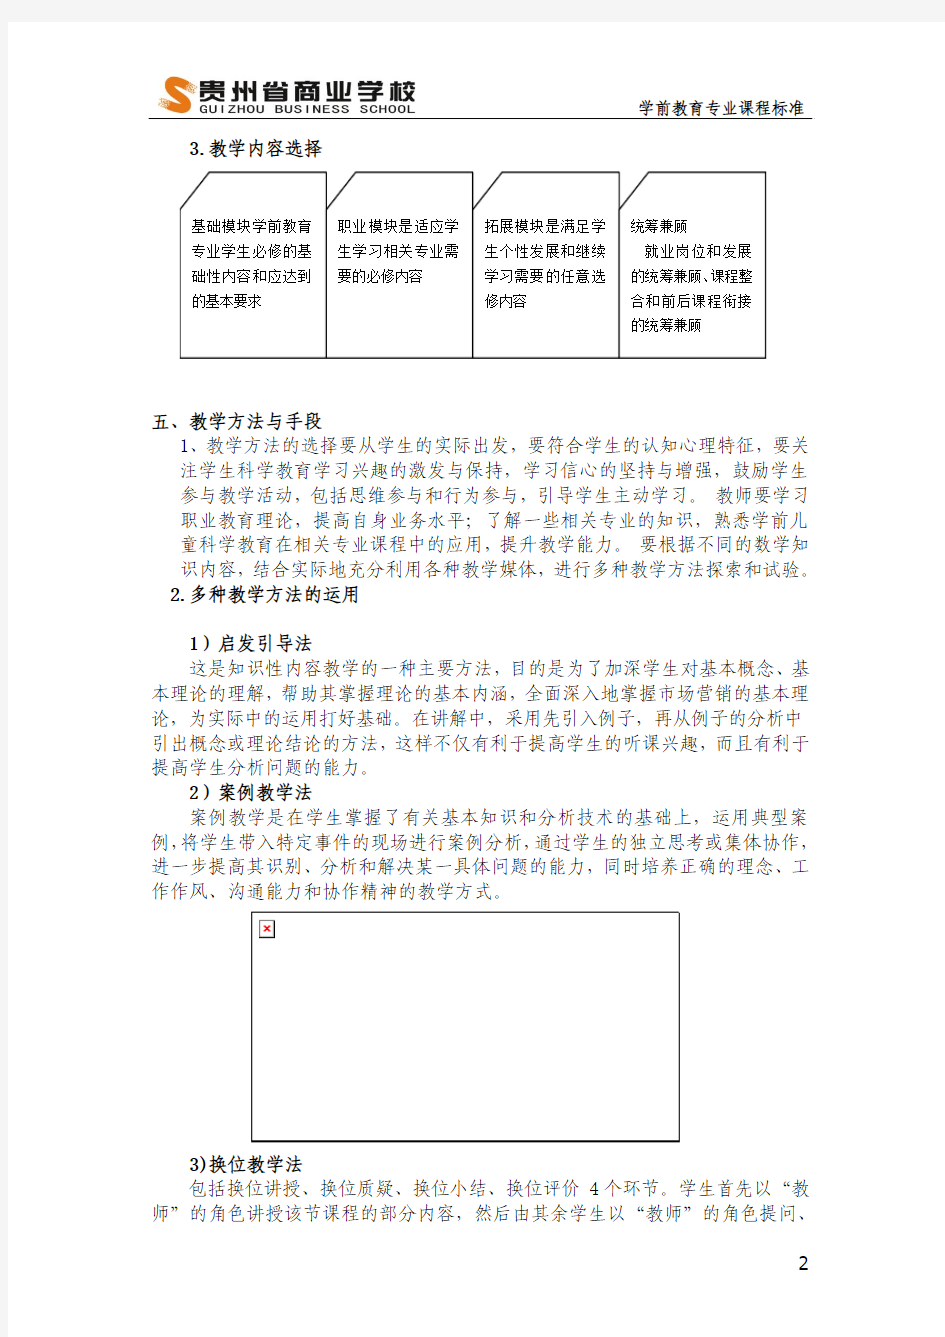 贵州省商业学校学前儿童科学教育课程标准王婷(1) (1)